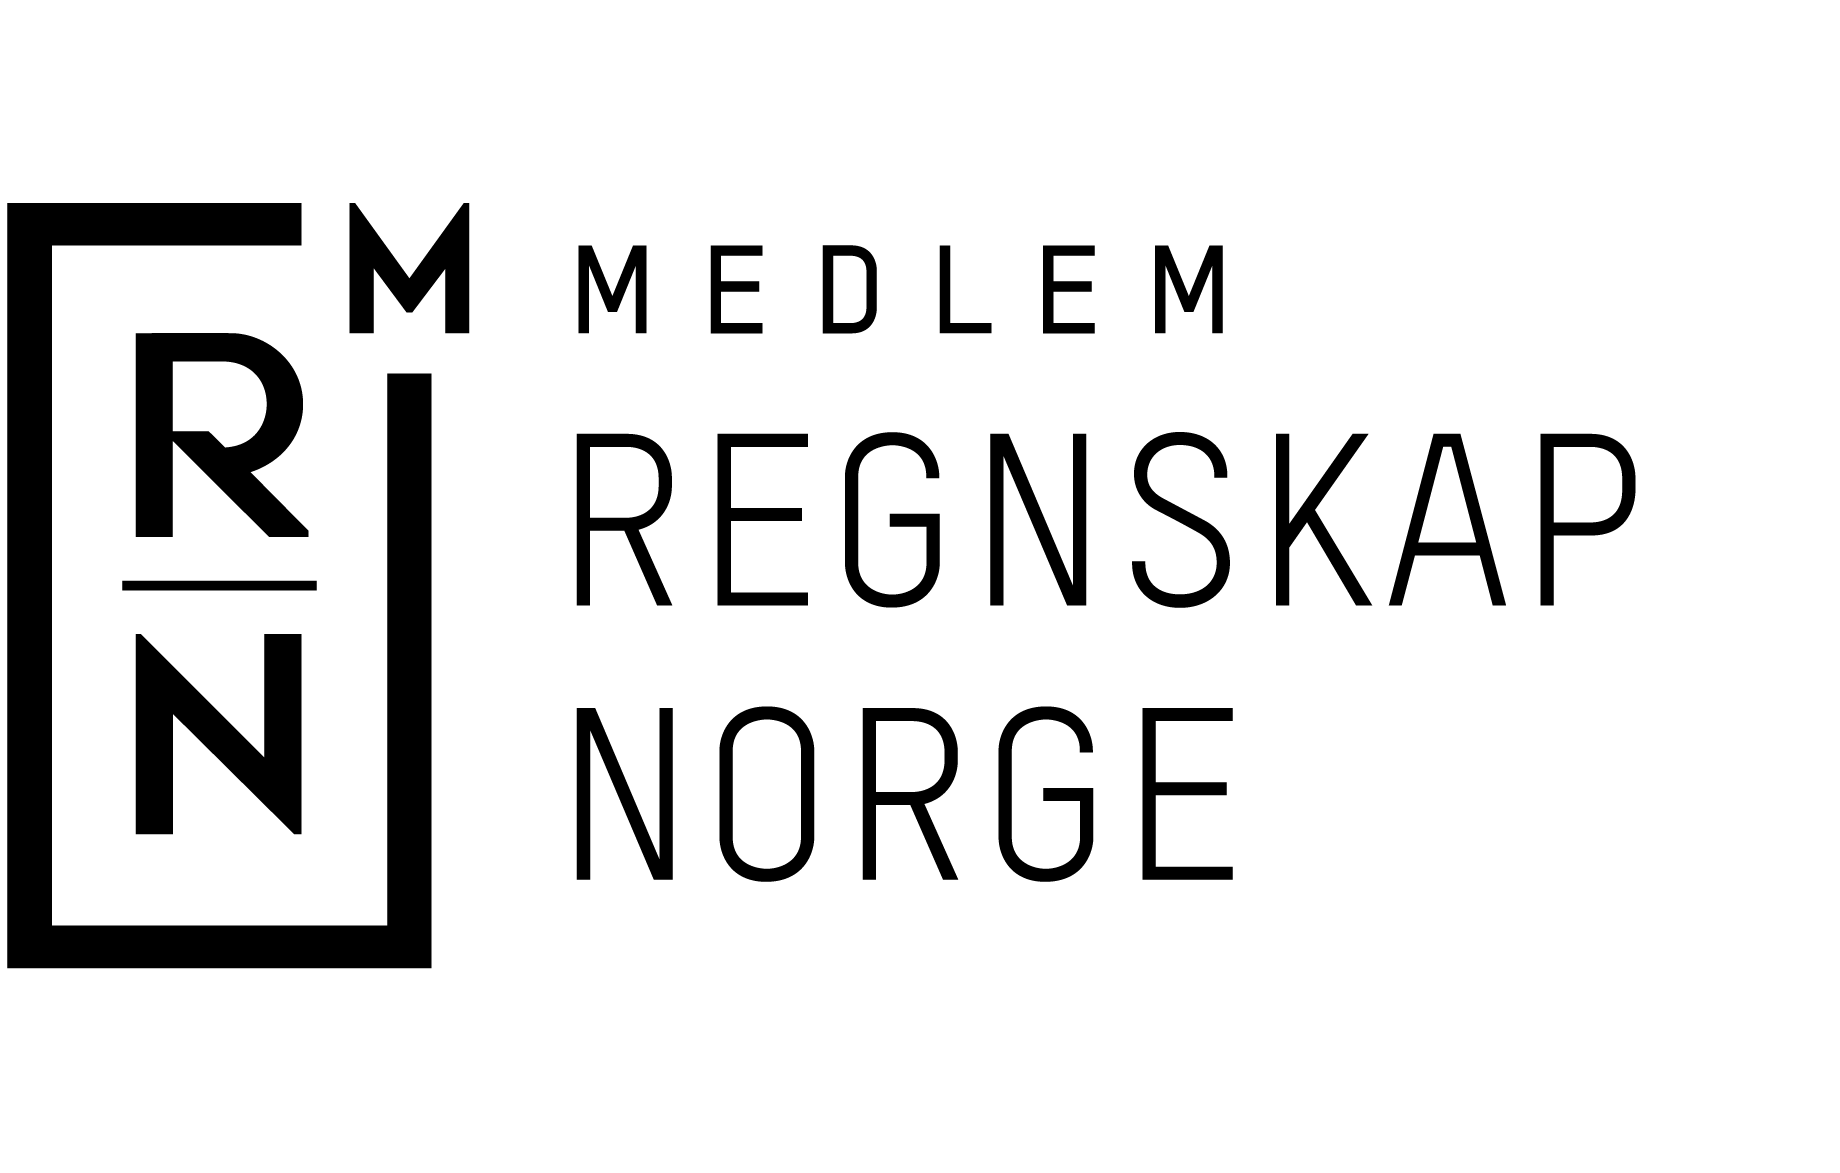 Logo - Regnskap Norge